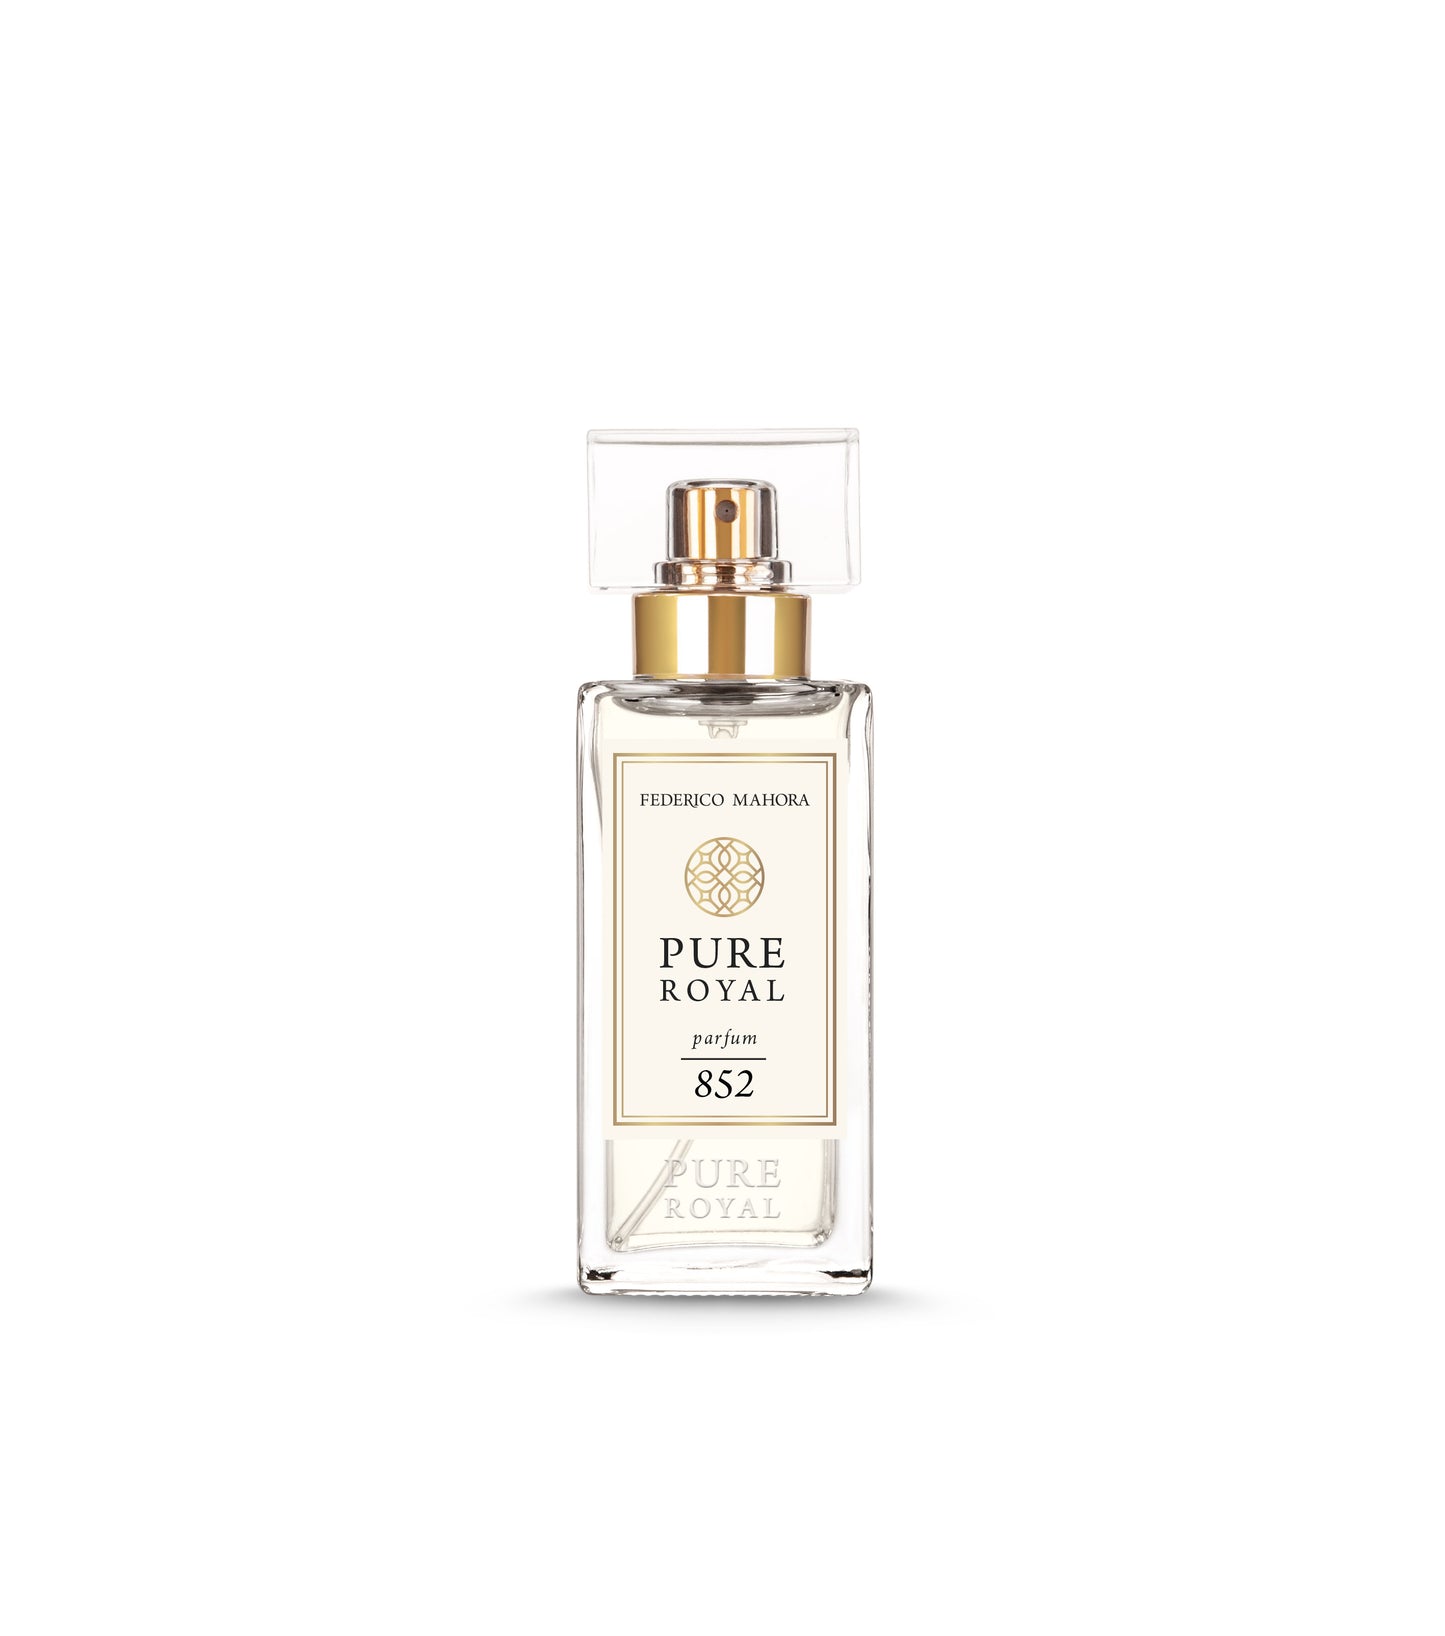 FM Pure Royal parfum 852